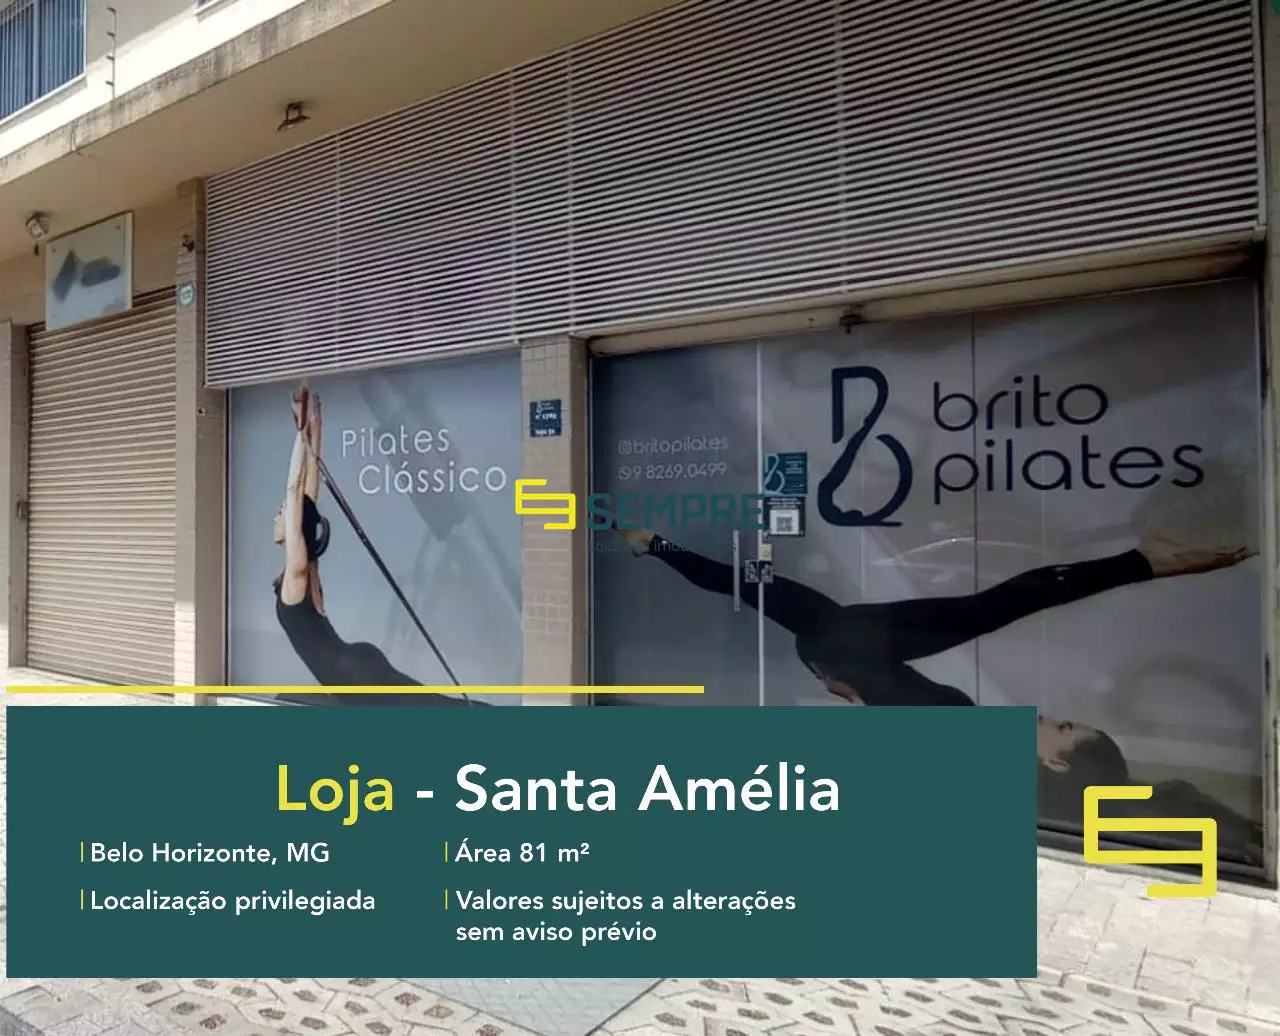 Loja para vender no Santa Amélia em Belo Horizonte, em excelente localização. O estabelecimento comercial conta com área de 80 m².